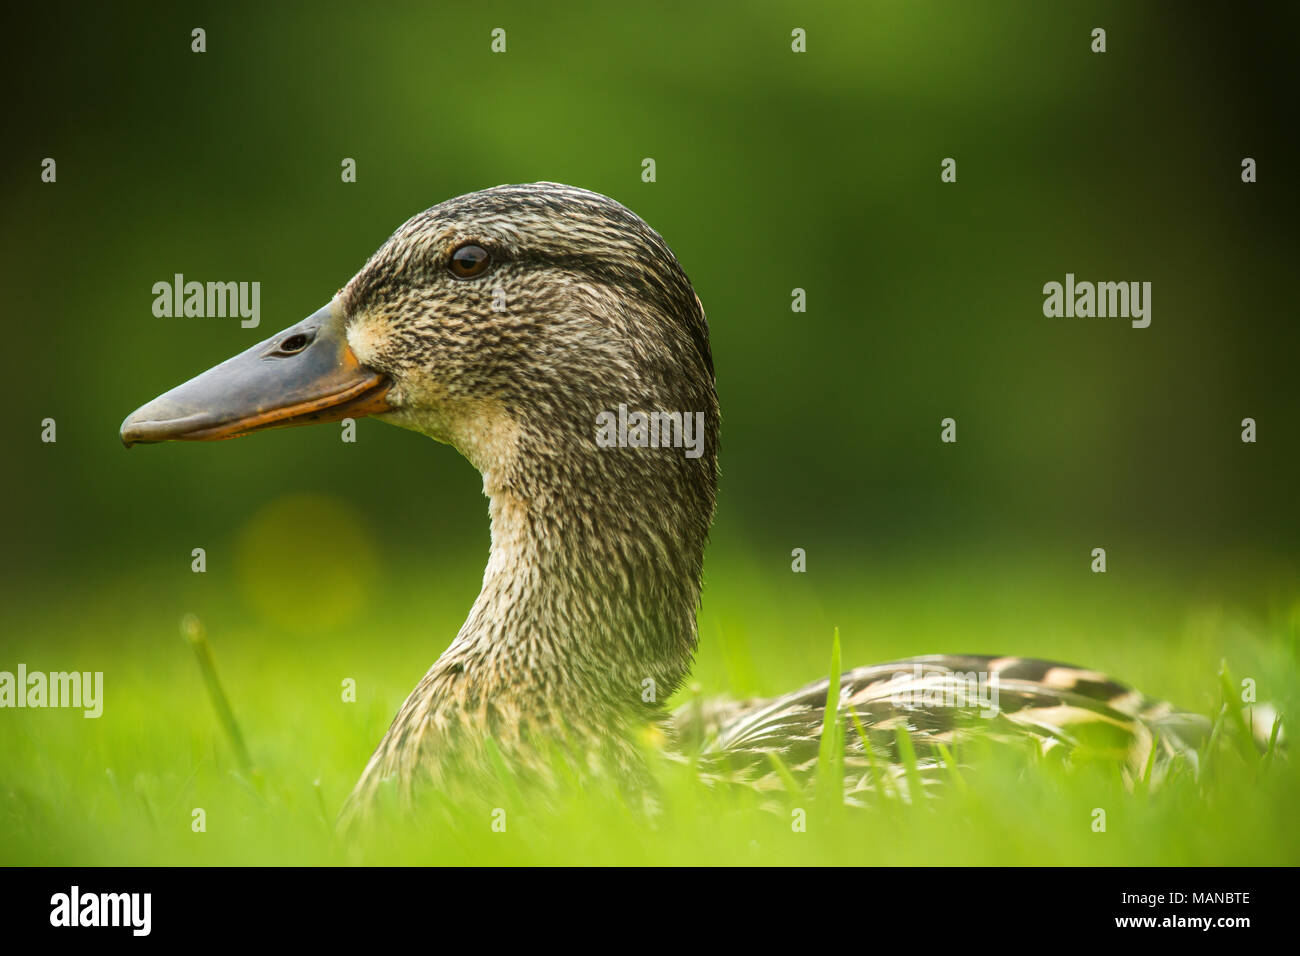 Europäischen Ente auf grünem Gras Stockfoto